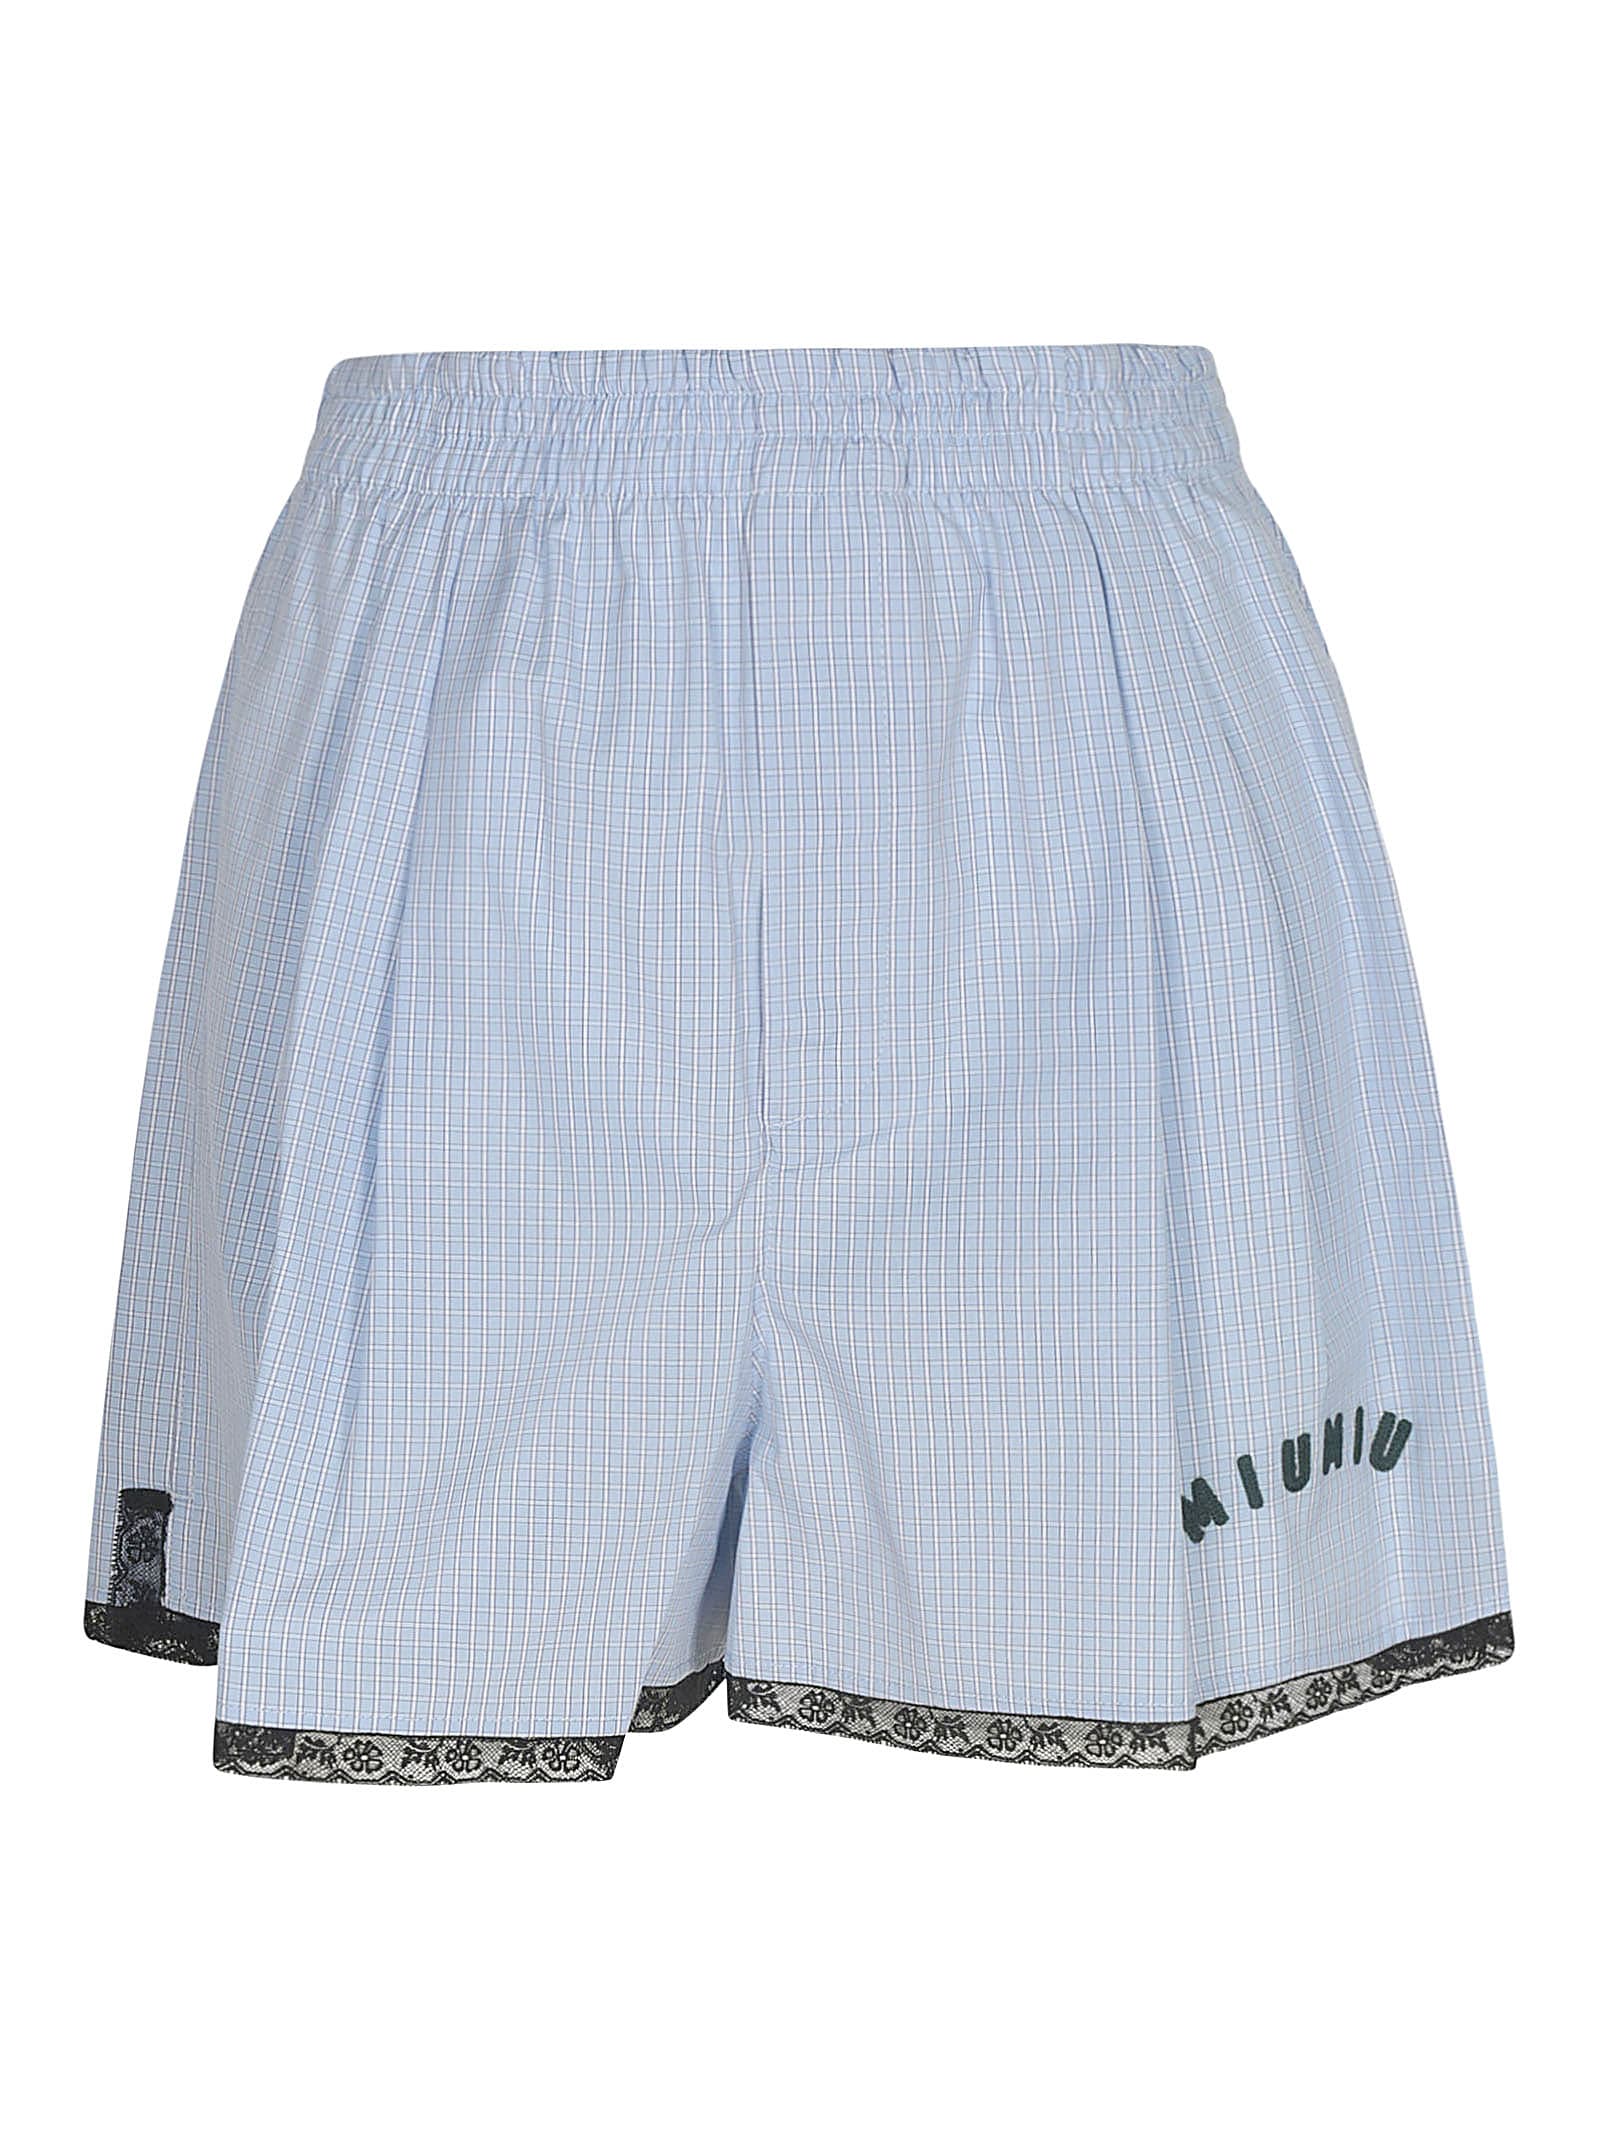 Miu Miu Logo Embroidered Checked Shorts